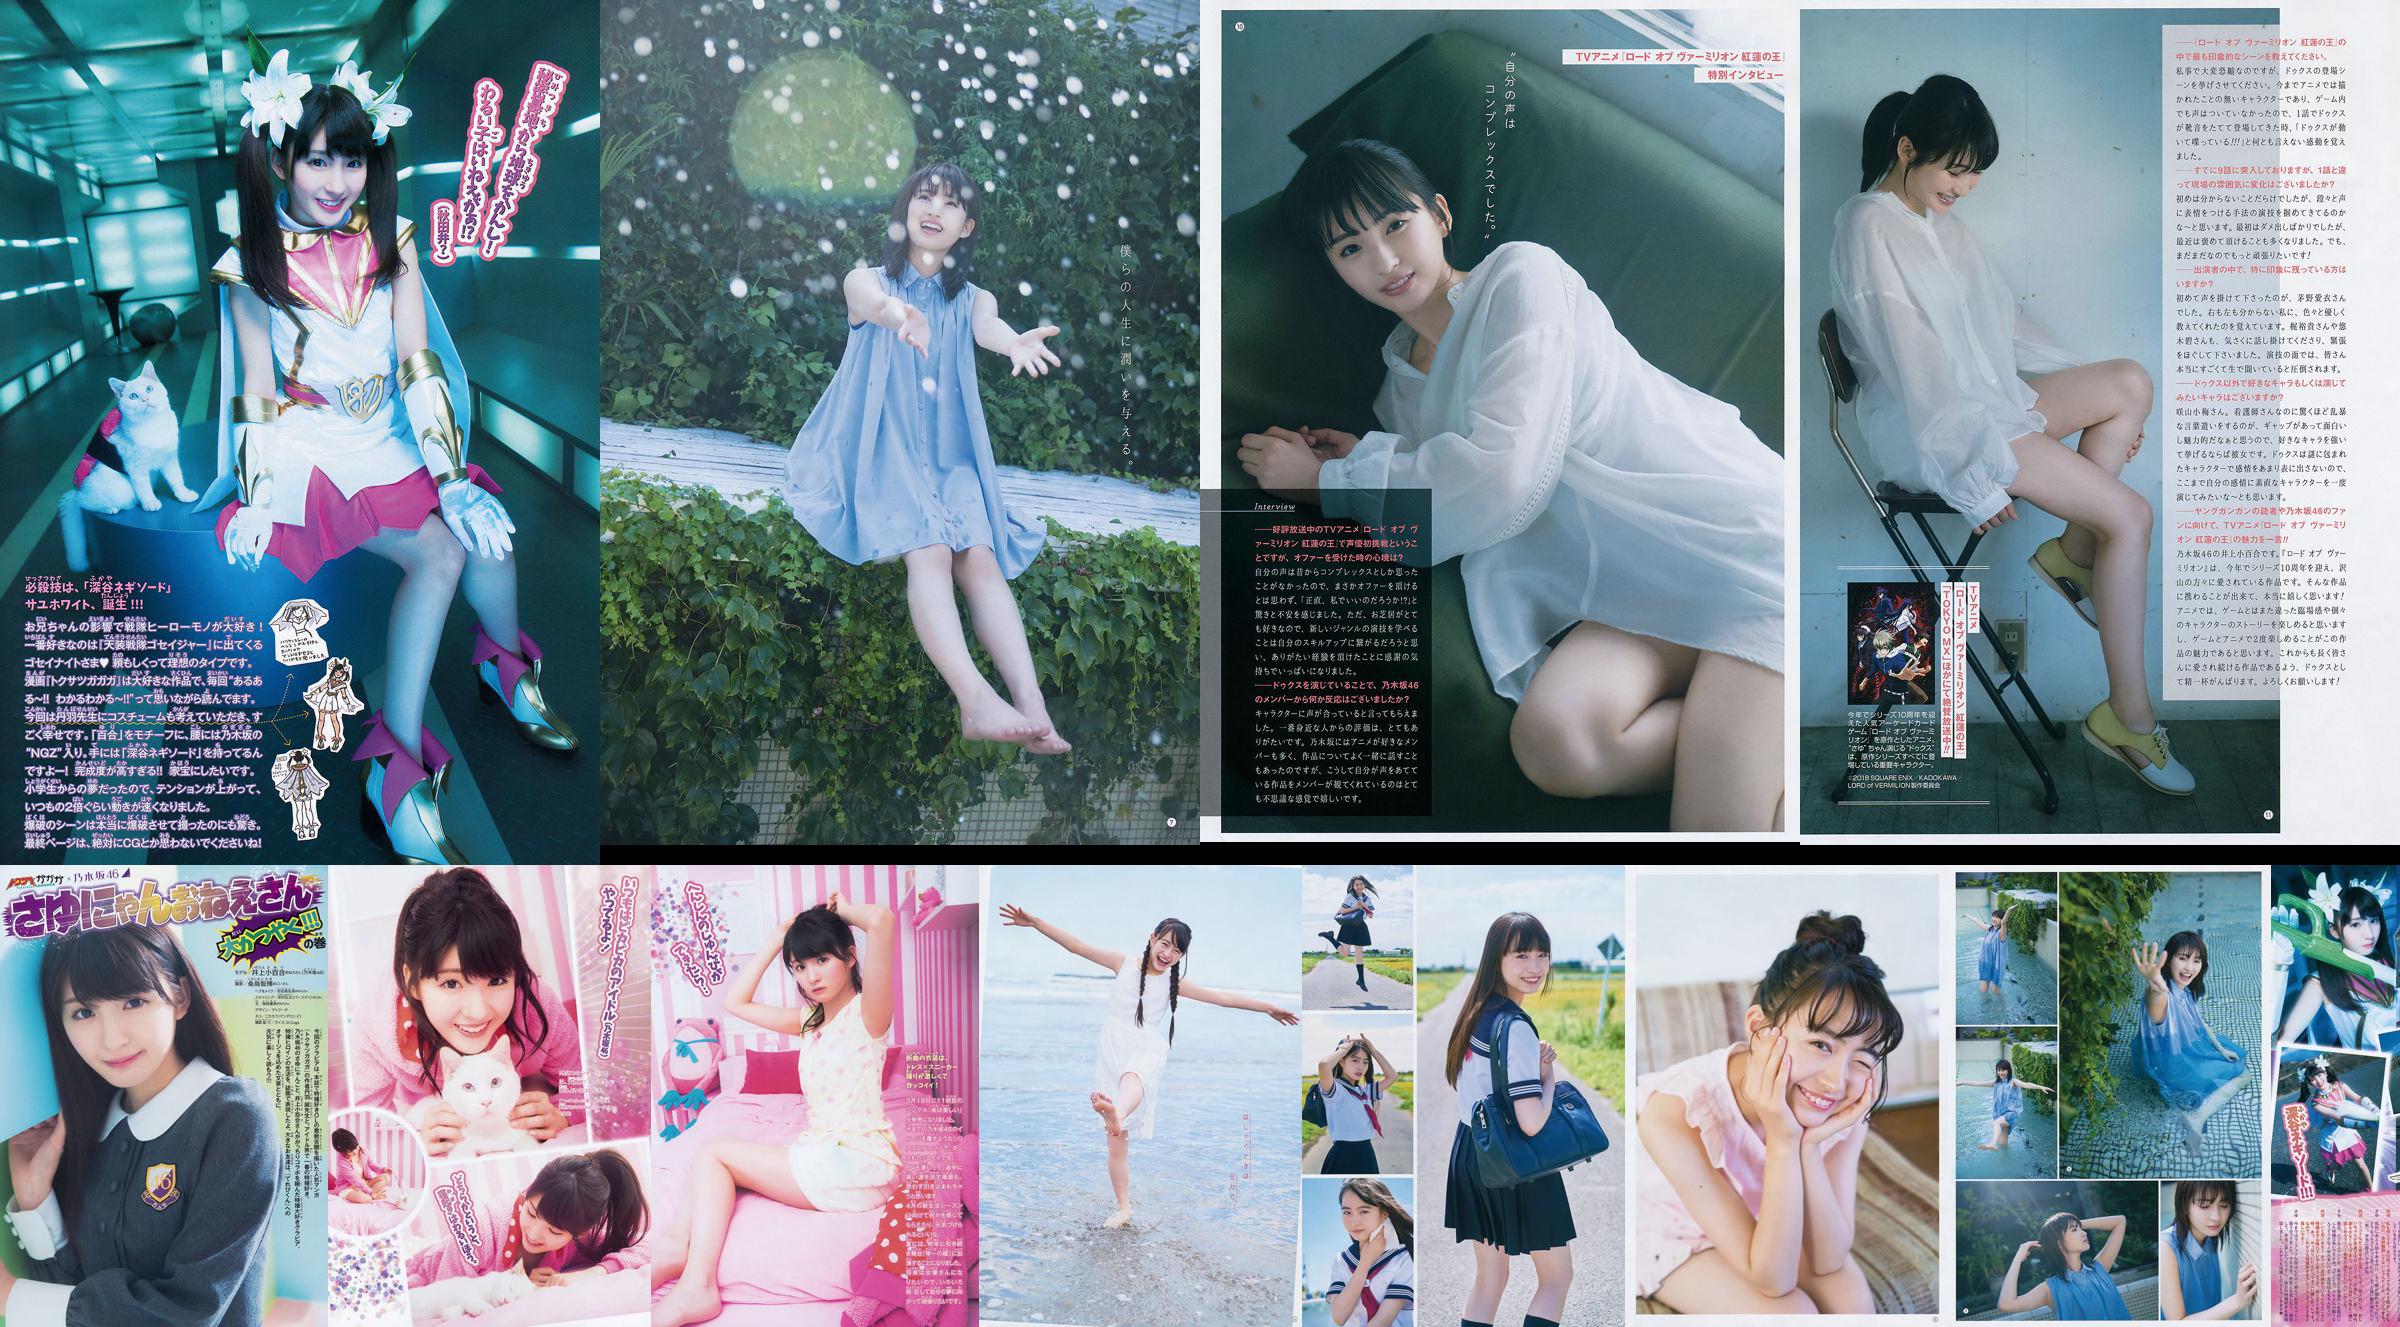 [Grands esprits de la bande dessinée hebdomadaire] Sayuri Inoue 2015 n ° 18 Magazine photo No.2fa74b Page 1